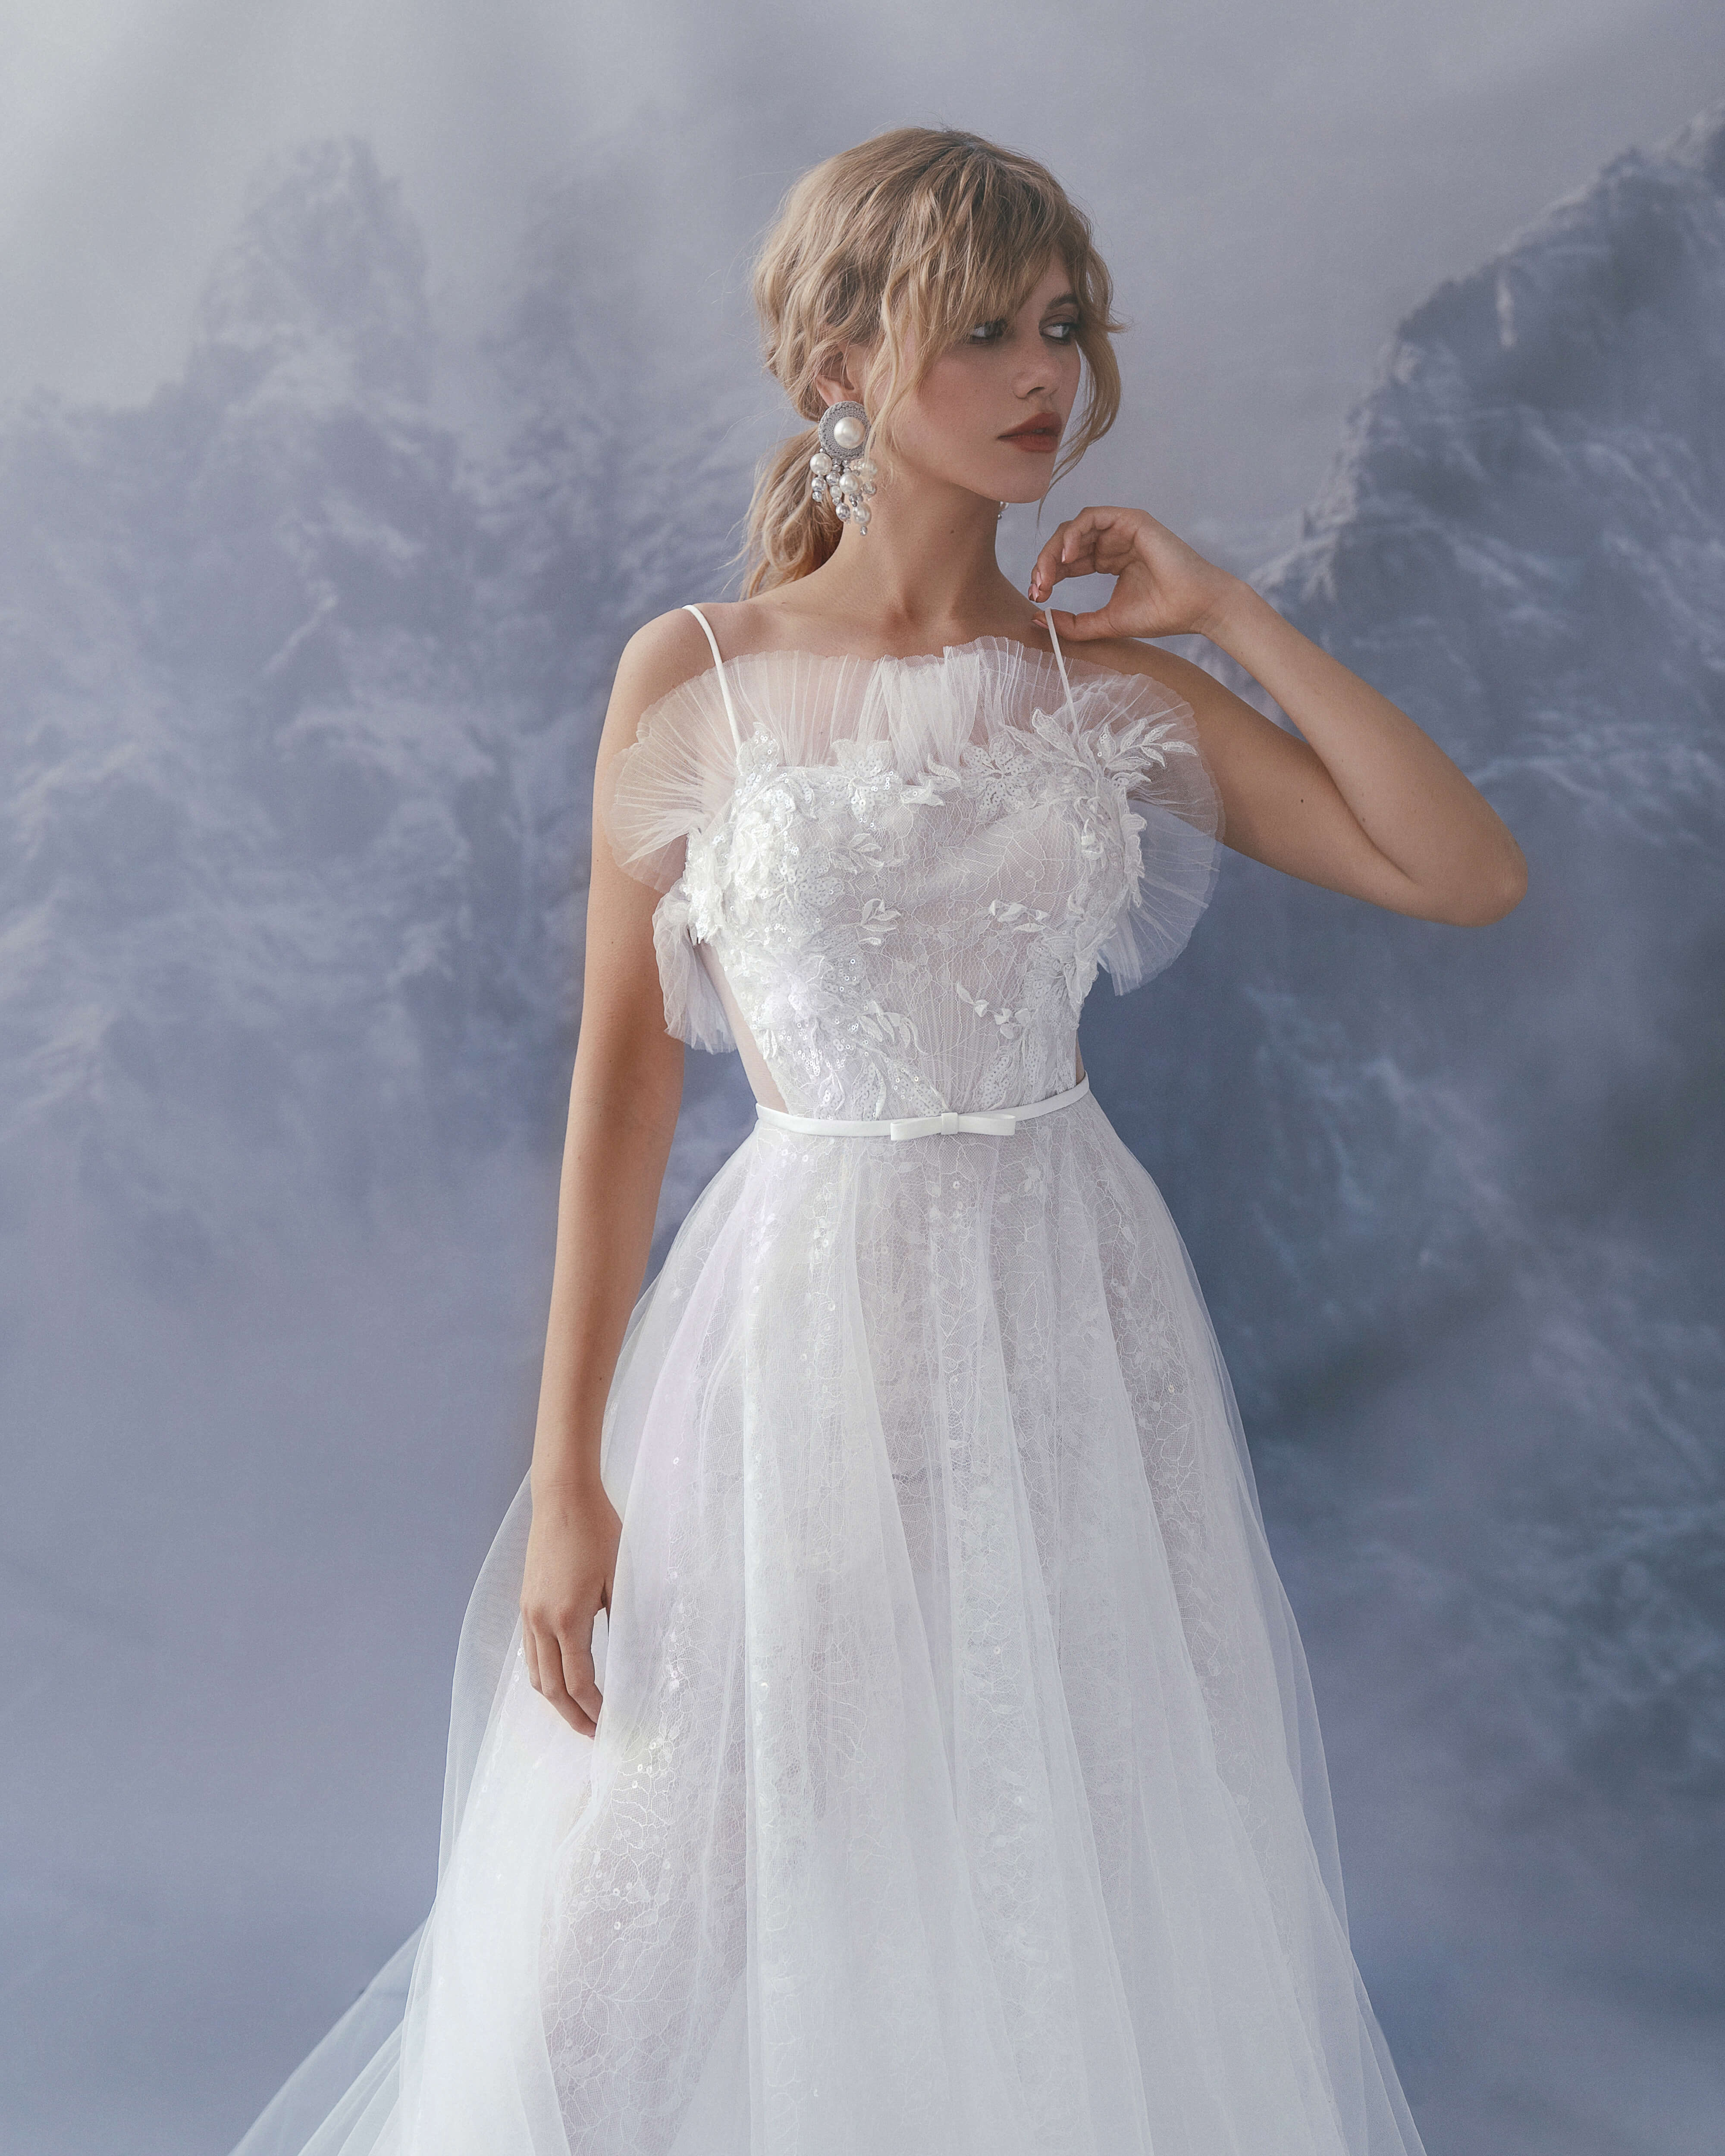 Купить свадебное платье «Берзе» Бламмо Биамо из коллекции Сказка 2022 года в салоне «Мэри Трюфель»